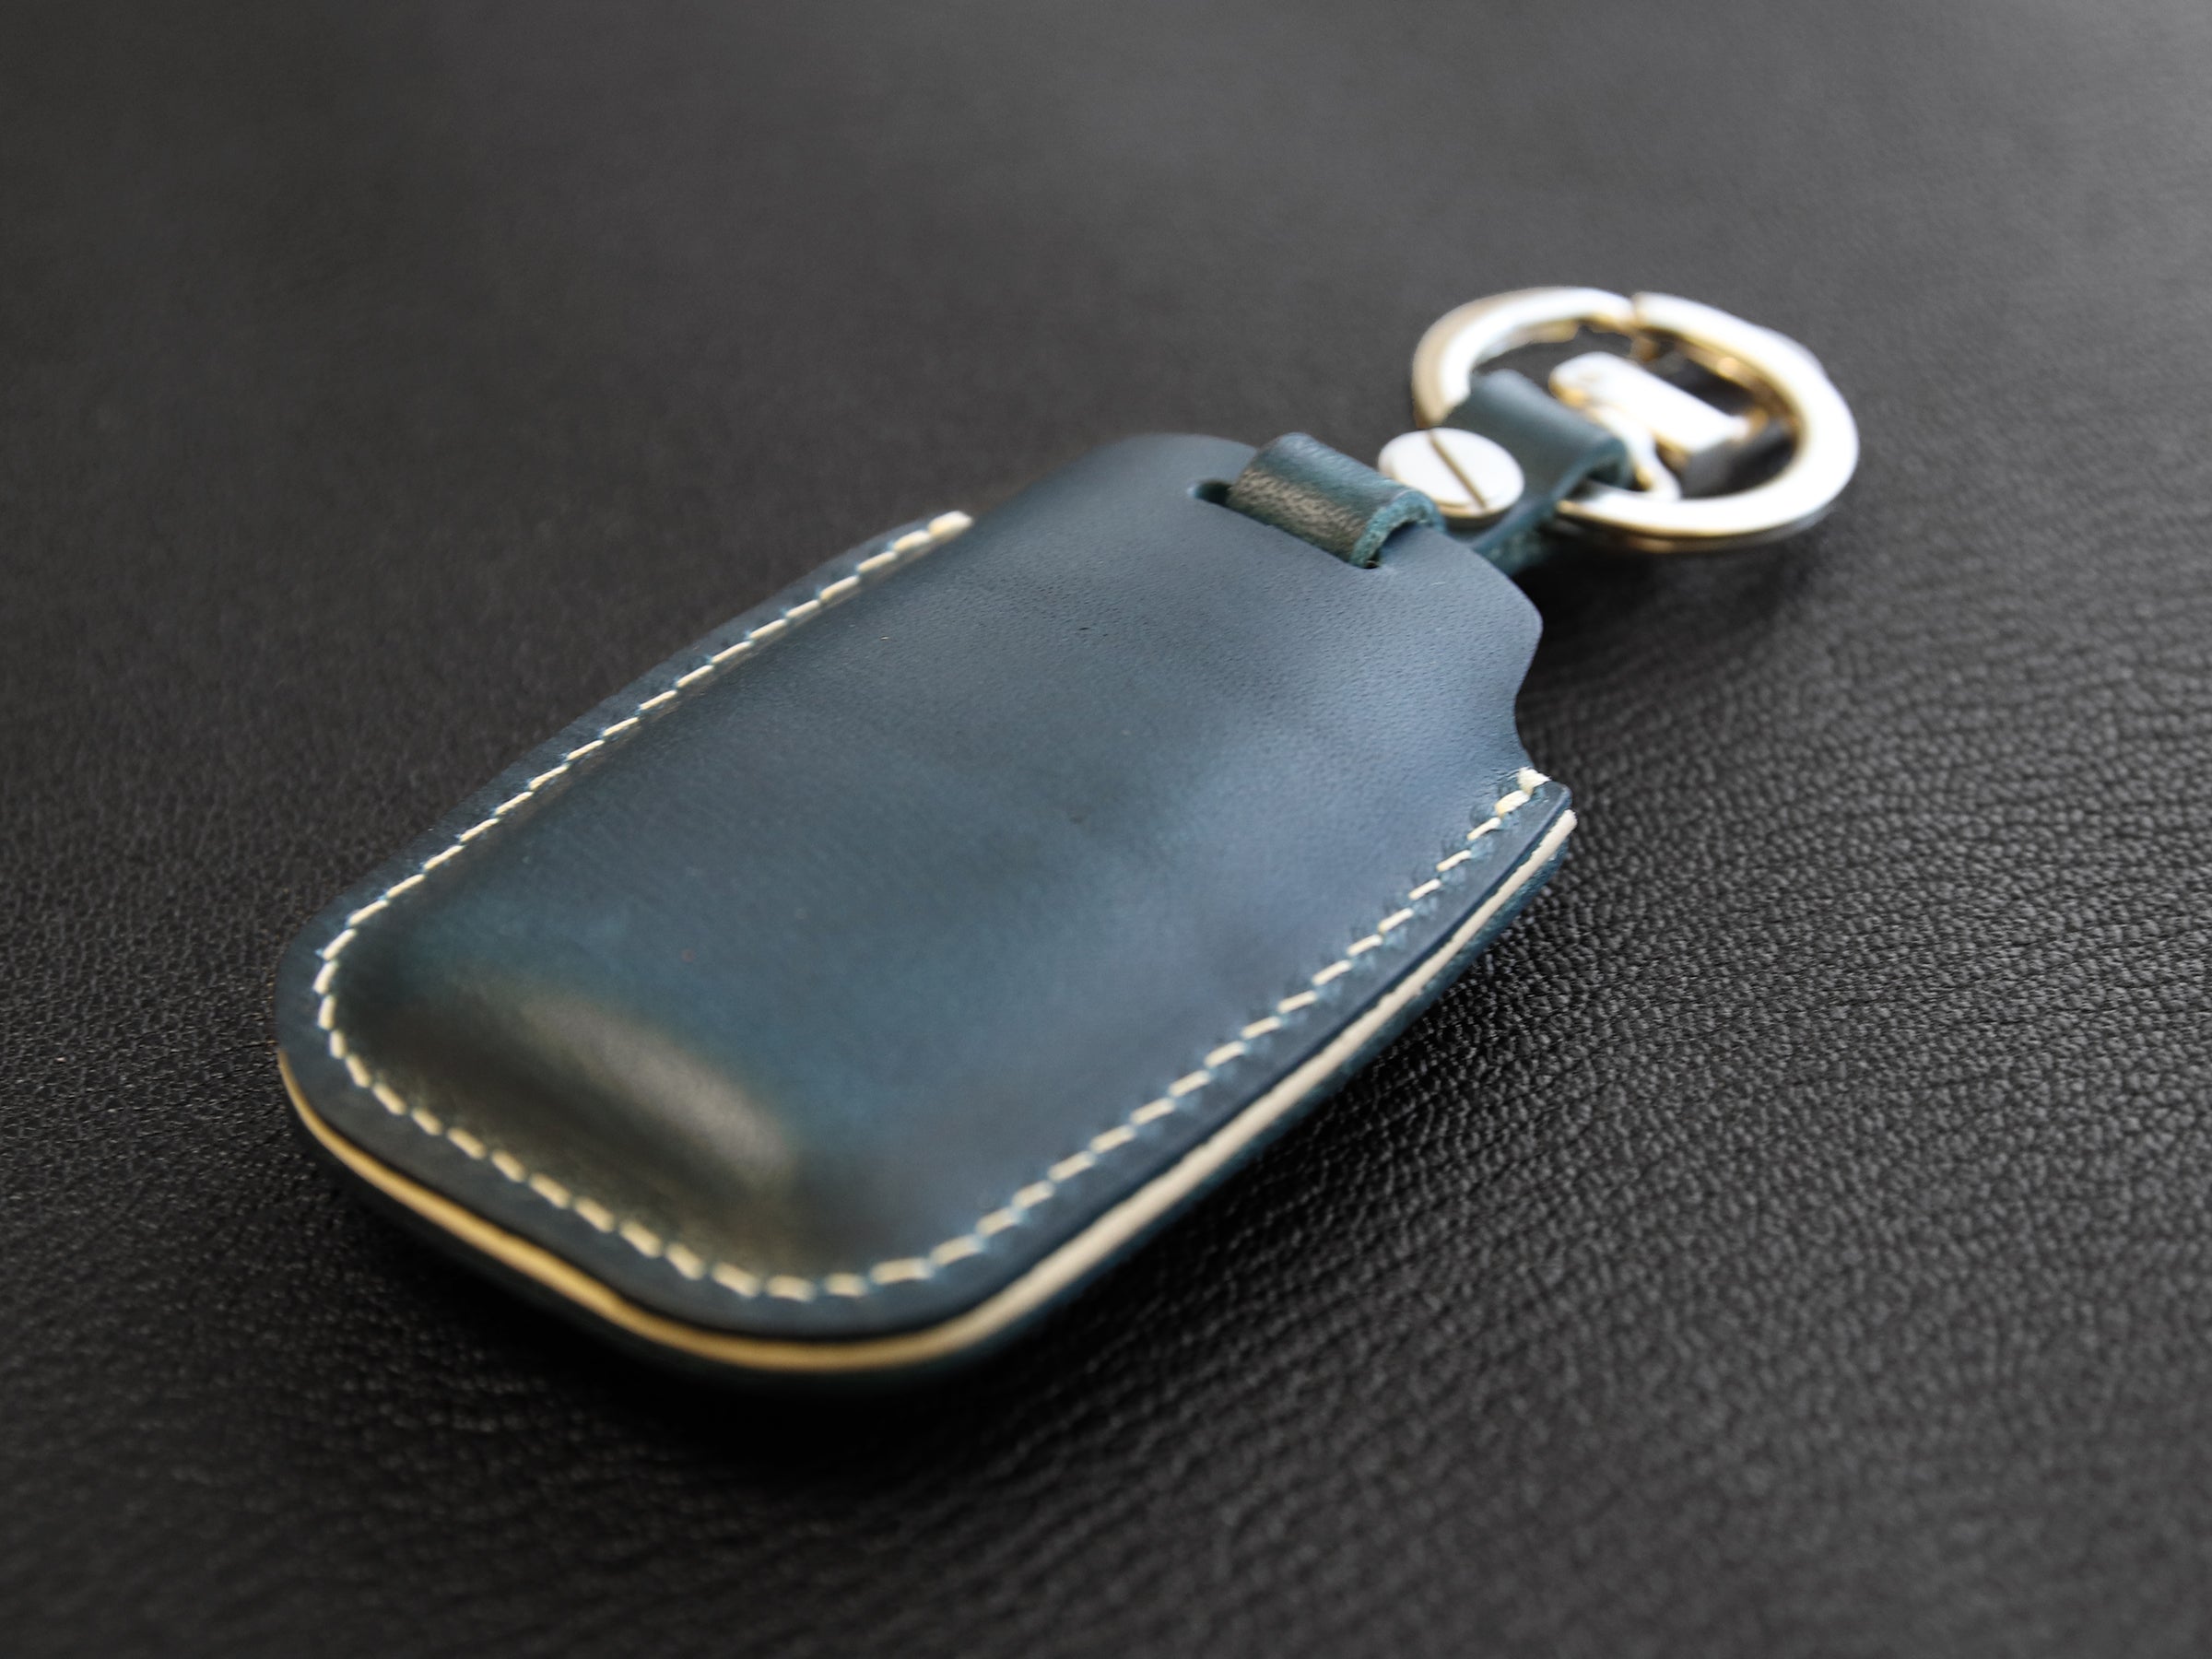 Kia [1-6] Key Cover for Sedona - Italian Veg-Tanned Leather